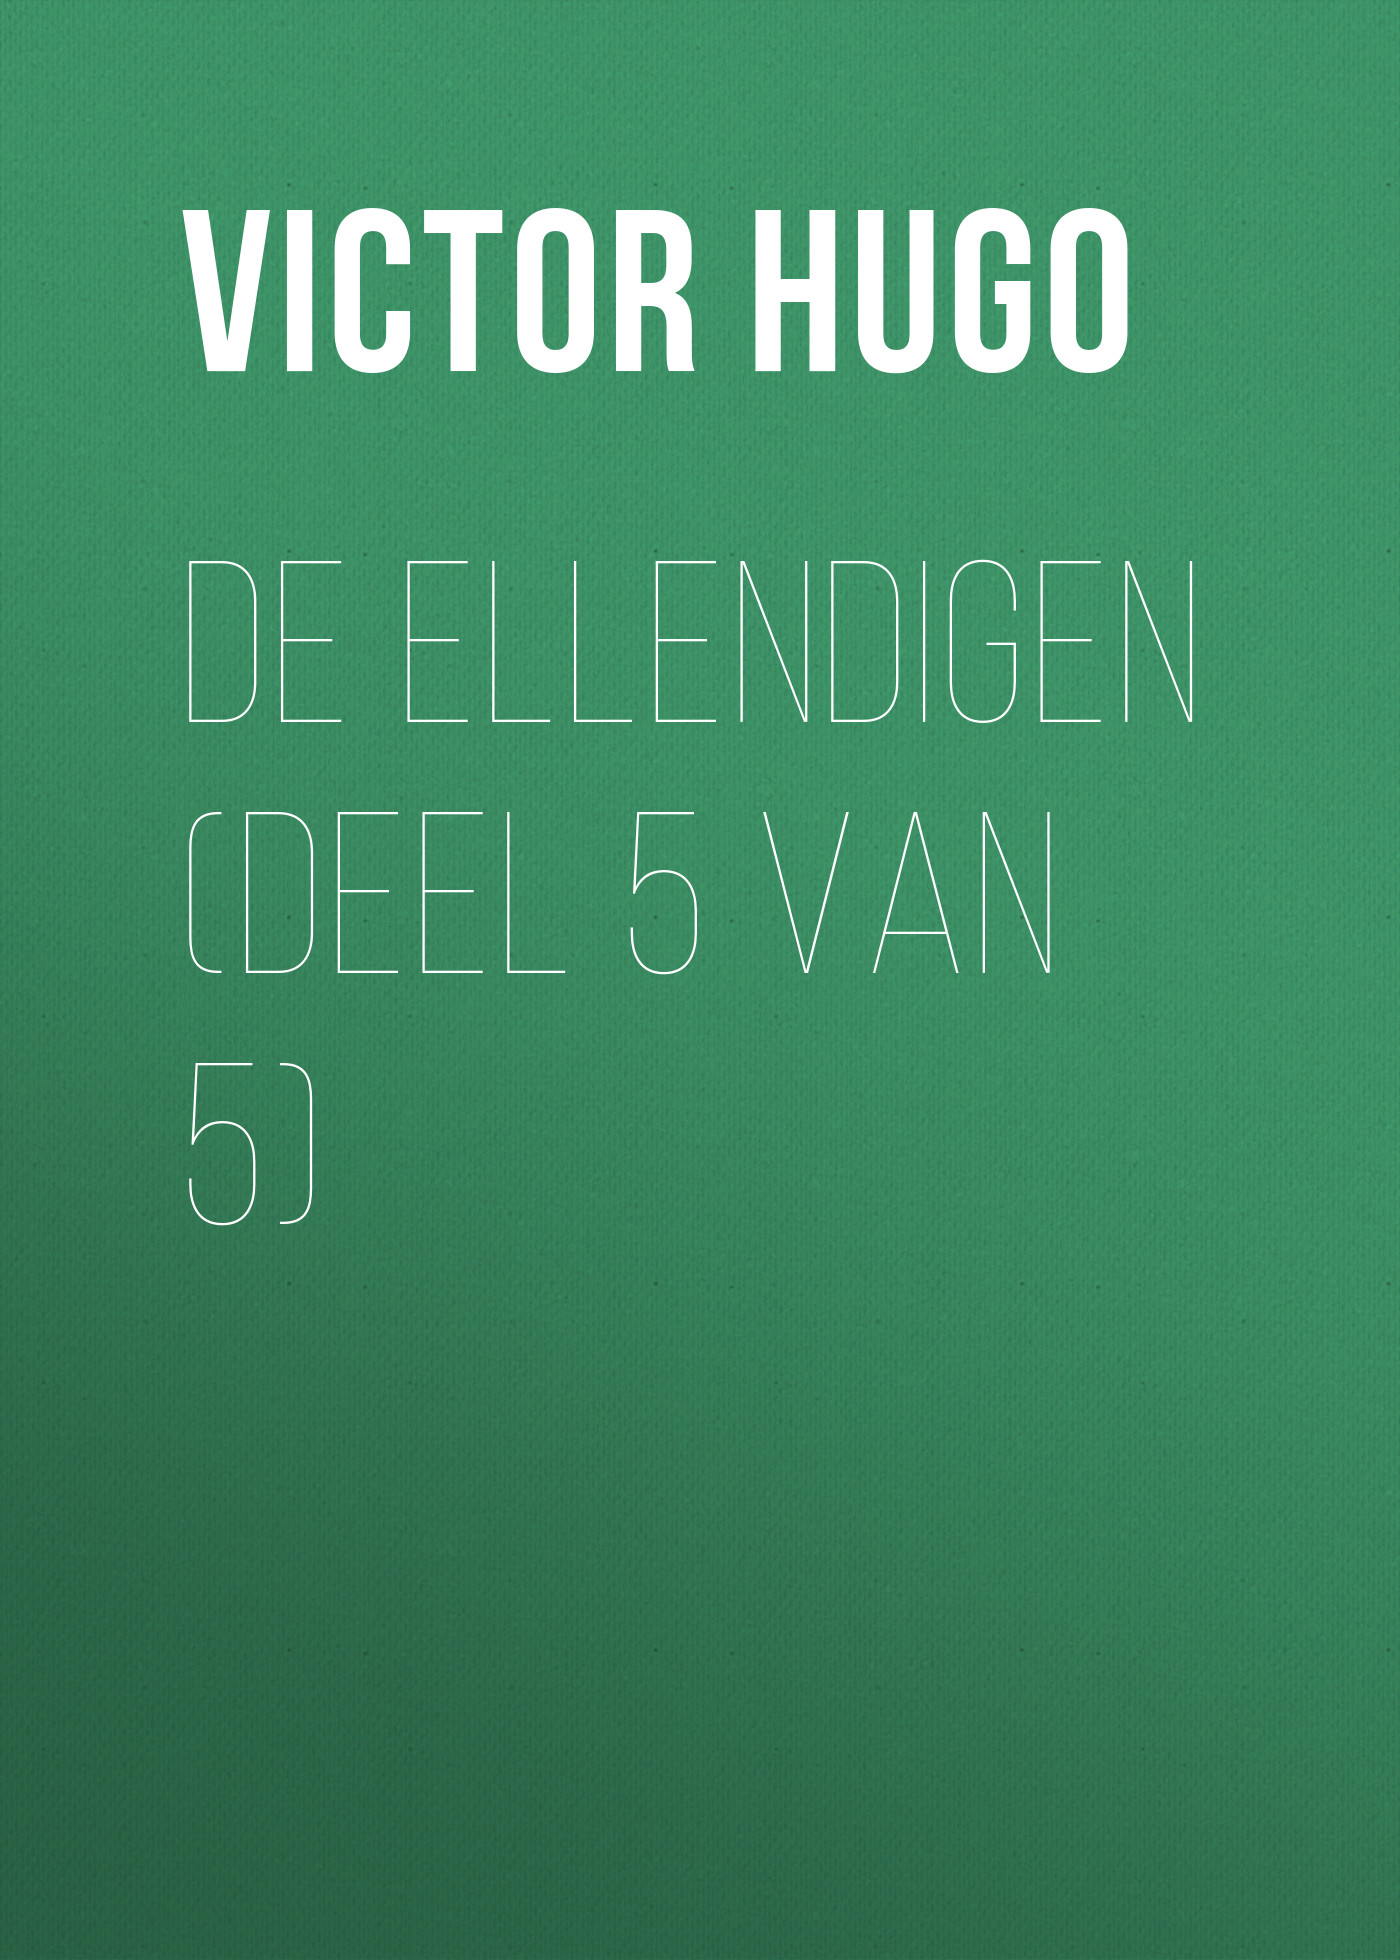 Книга De Ellendigen (Deel 5 van 5) из серии , созданная Victor Hugo, может относится к жанру Литература 19 века, Зарубежная старинная литература, Зарубежная классика. Стоимость электронной книги De Ellendigen (Deel 5 van 5) с идентификатором 25230172 составляет 0 руб.